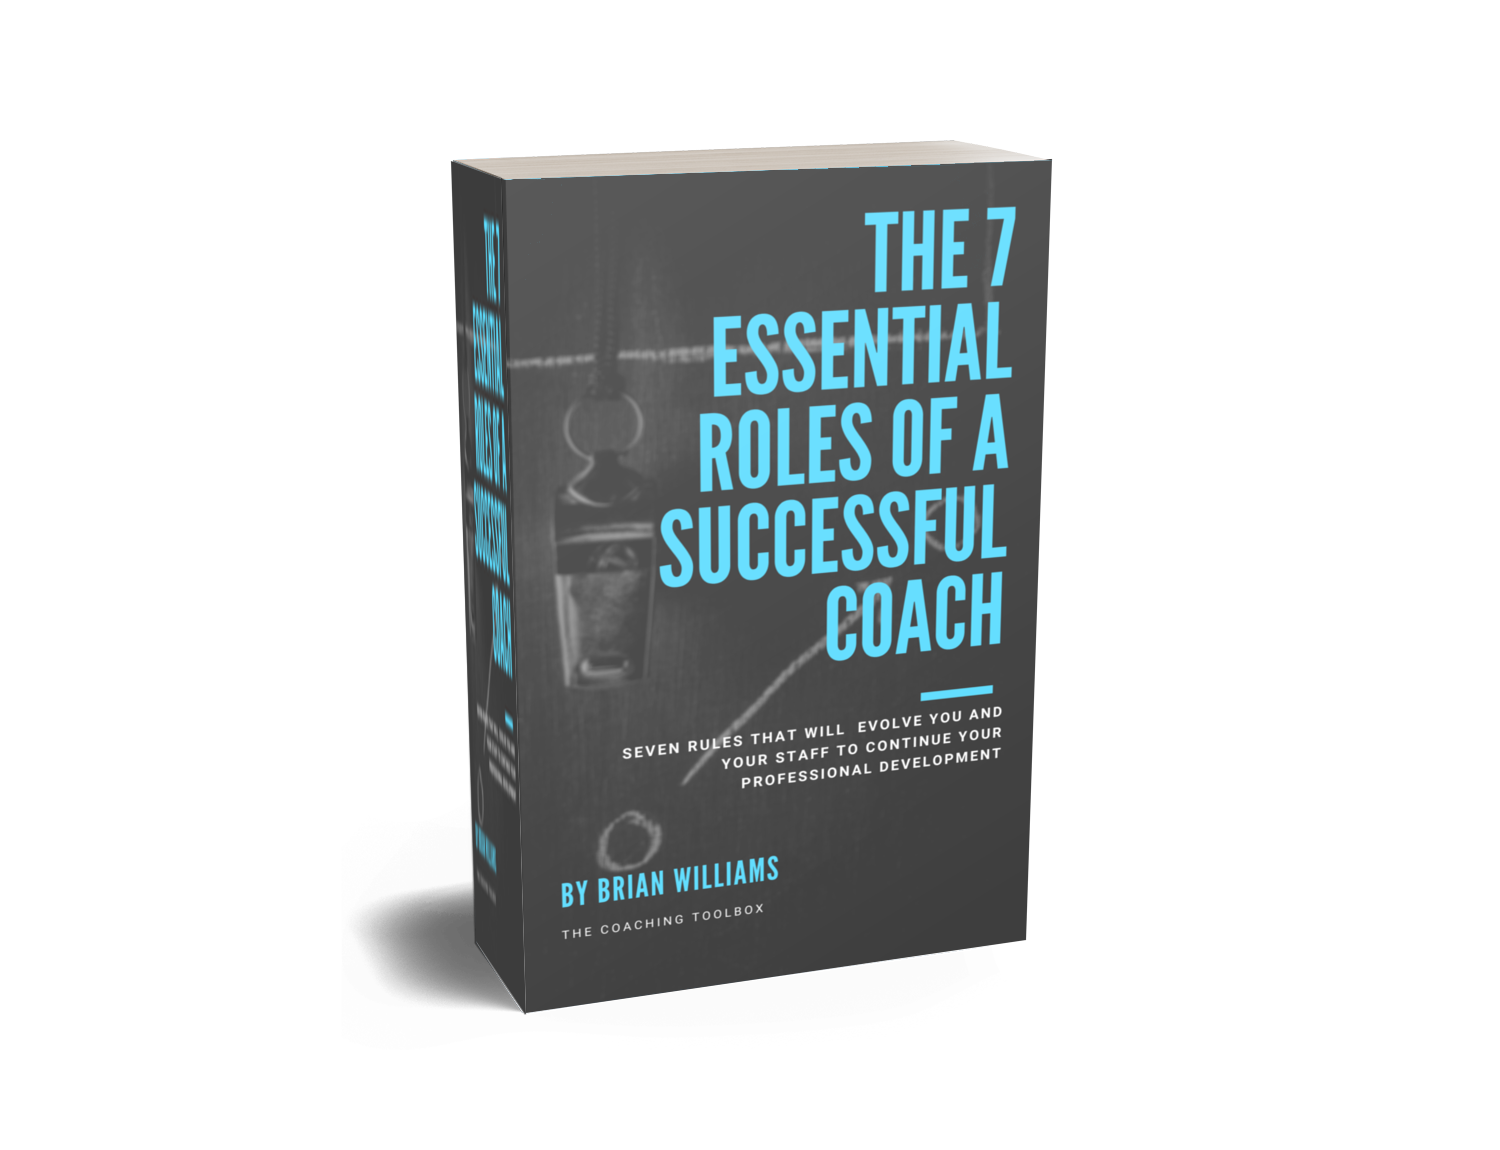 7 Essential Roles of a Successful Coach